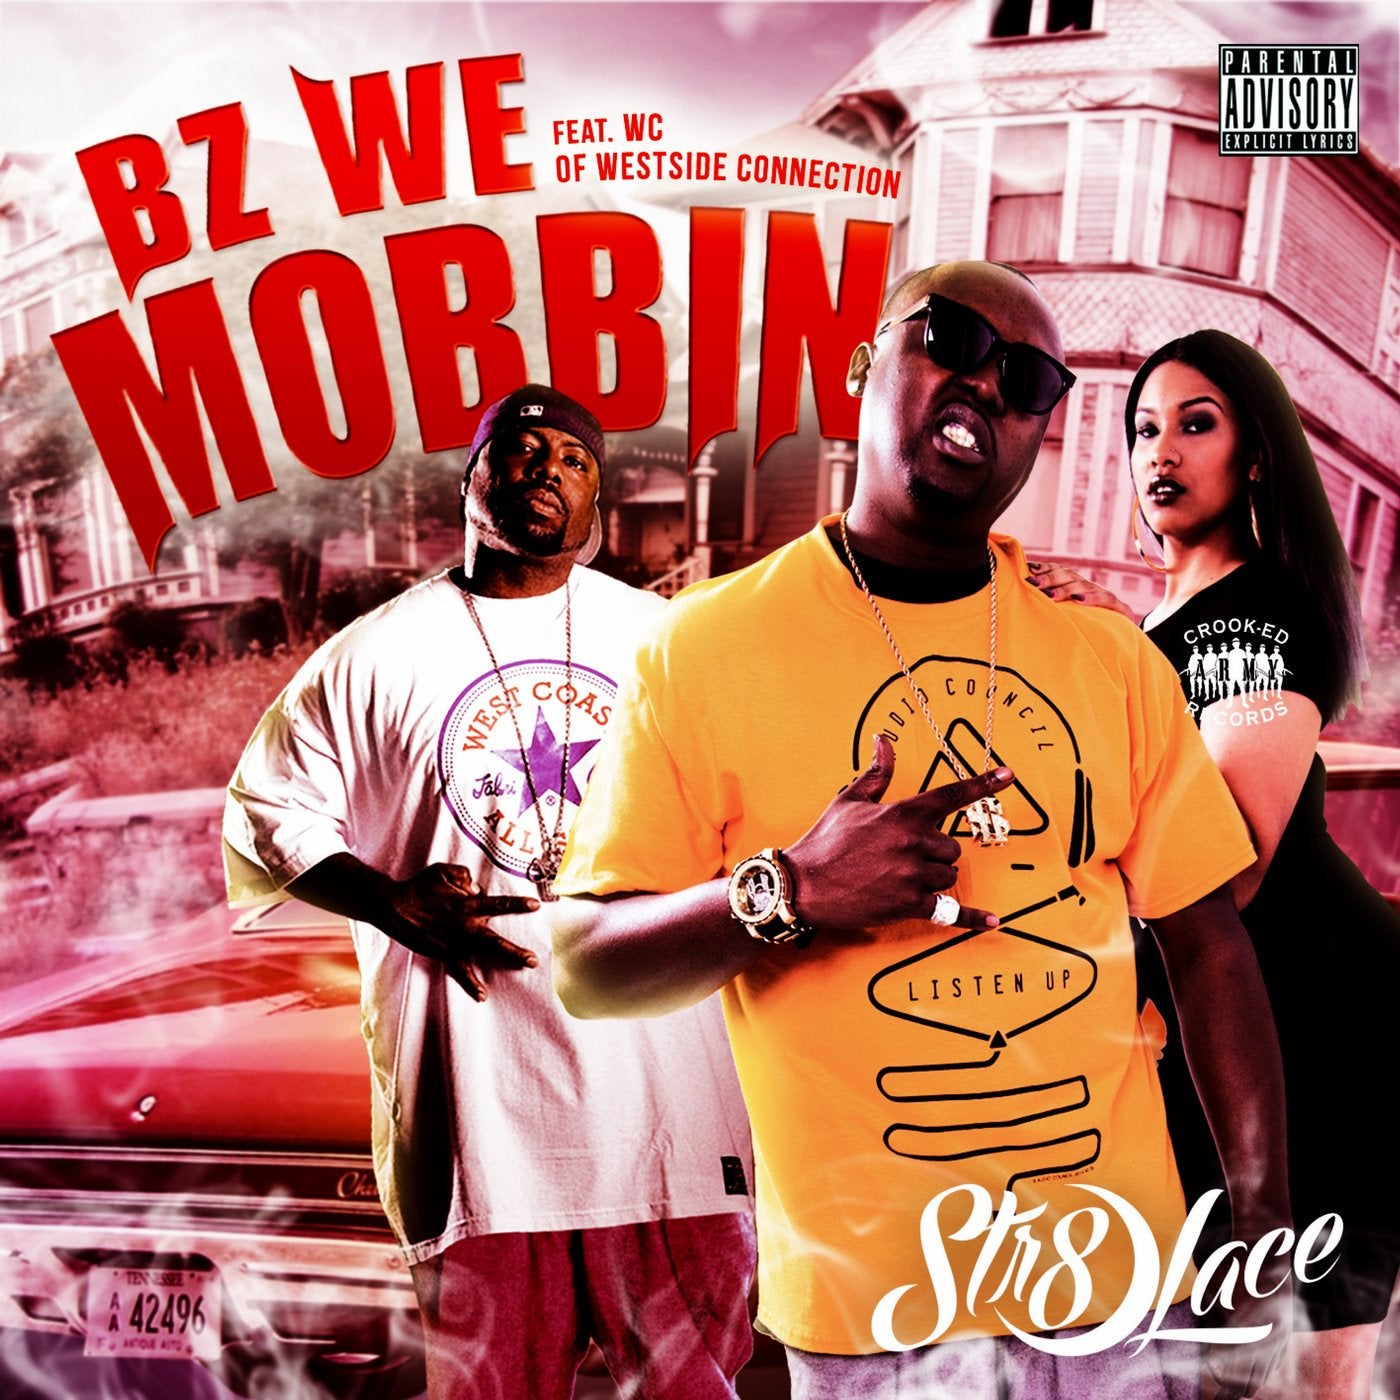 Bz We Mobbin' (feat. WC) - Single